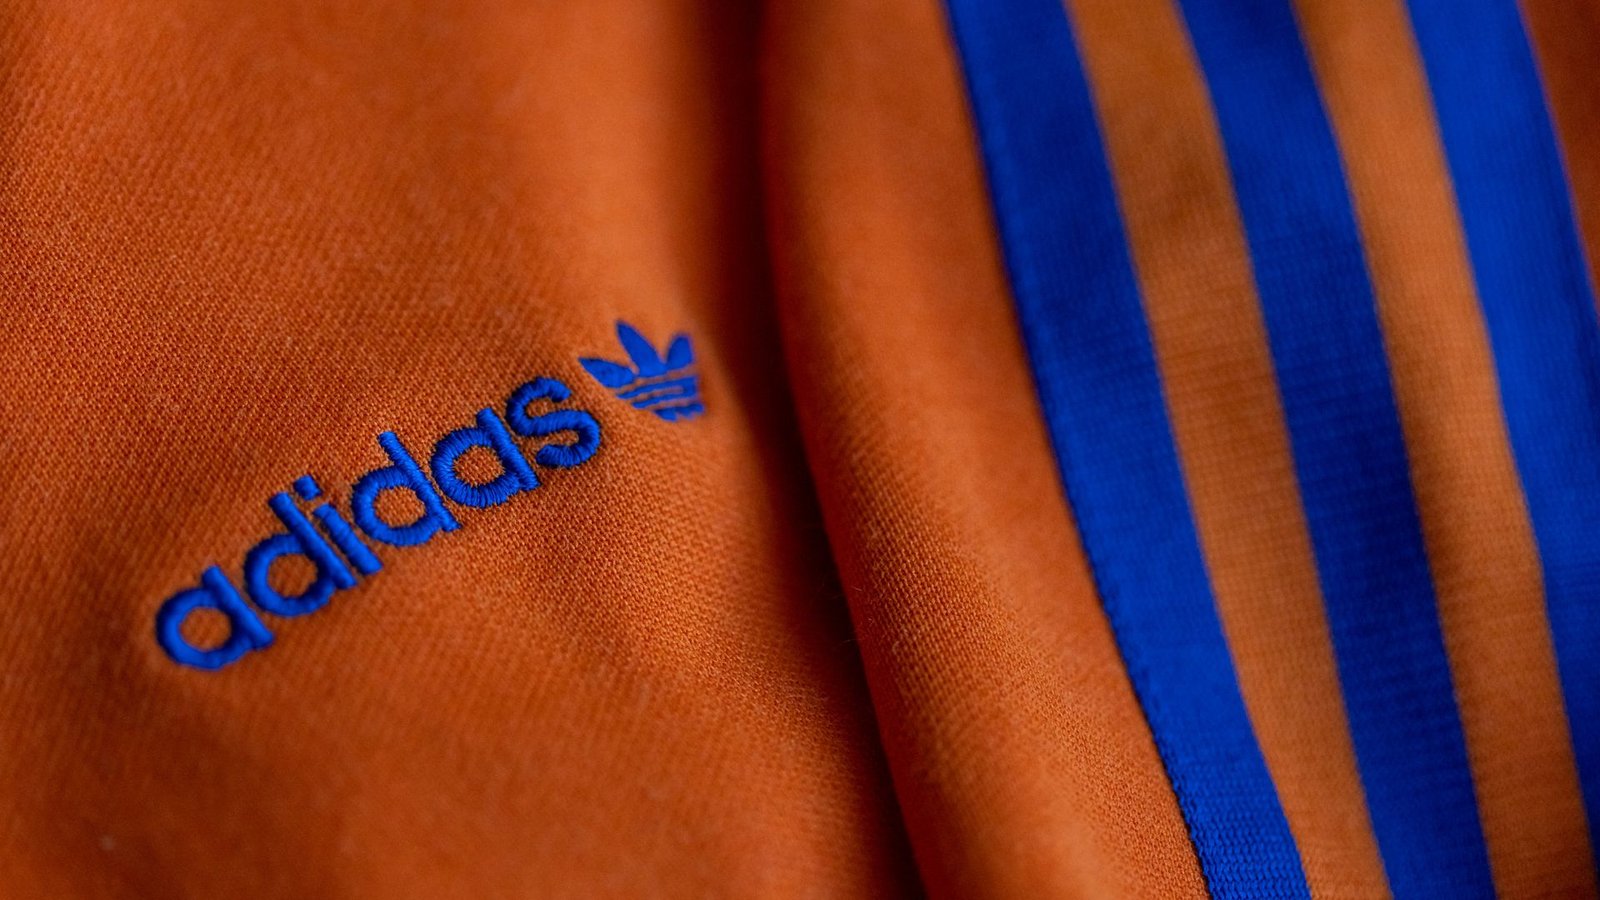 Adidas klagt gegen Nike wegen zu ähnlichem Design – Nike hingegen betrachtet Streifen als „naheliegende Gestaltungsform“. (Archivfoto)Foto: dpa/Daniel Karmann